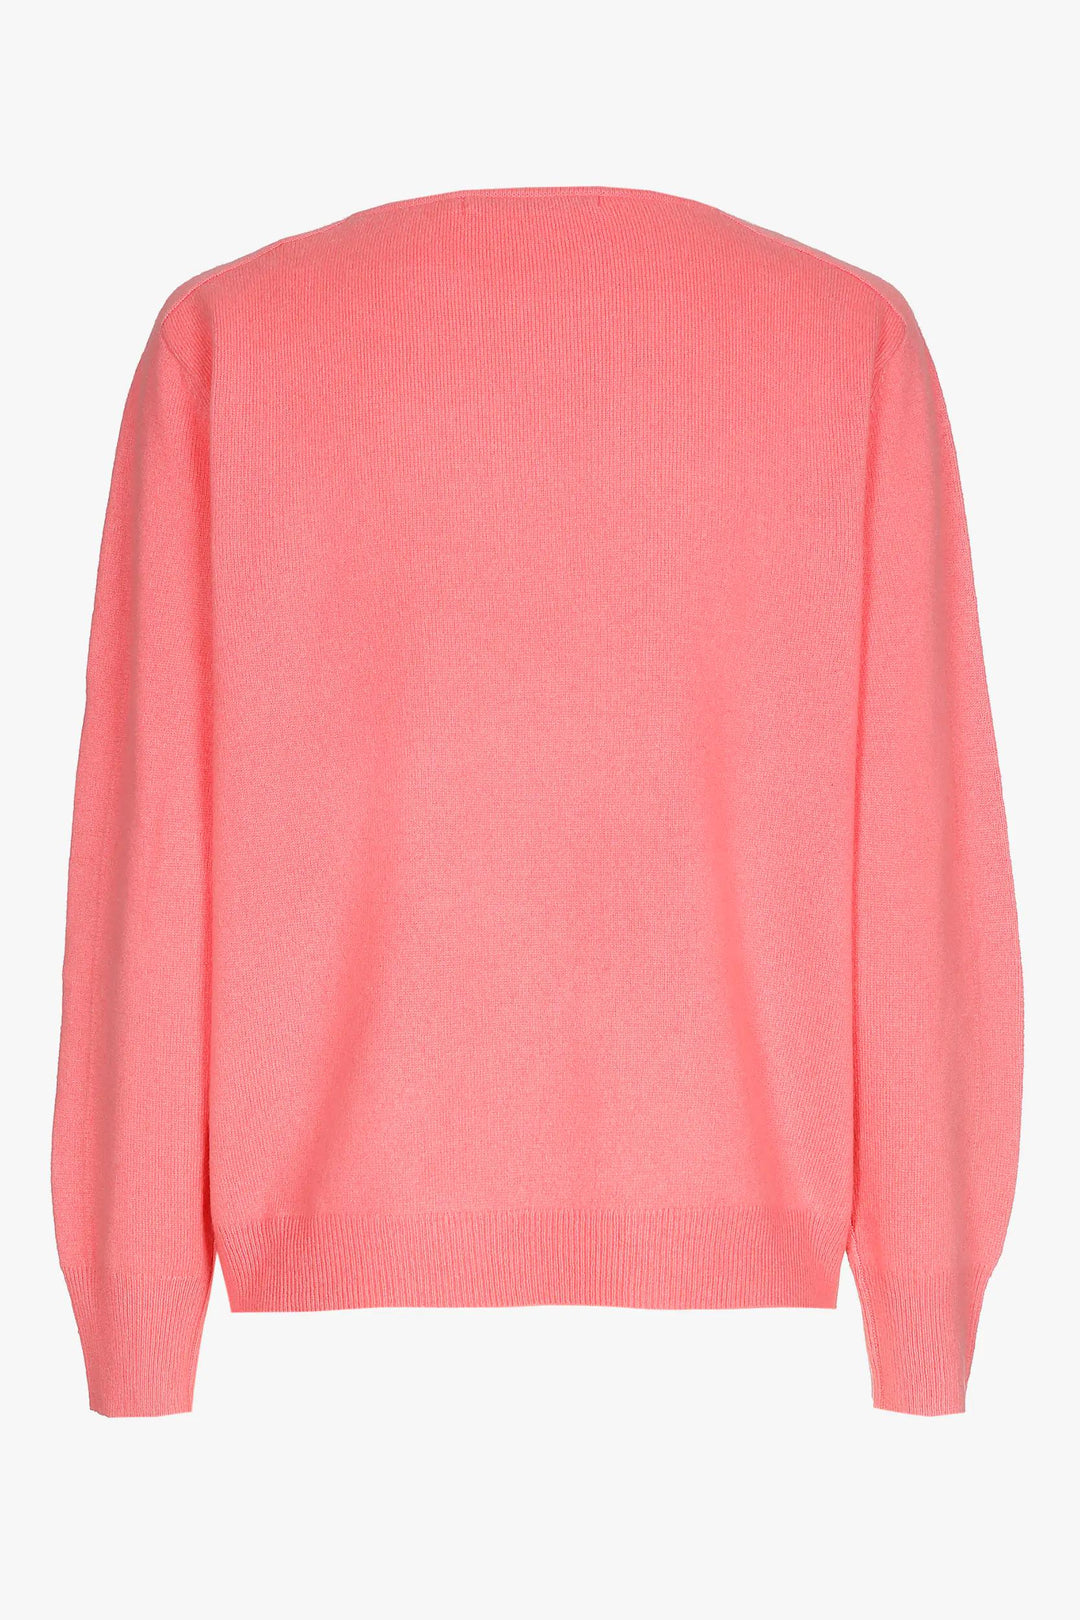 roze soepelvallende trui van kasjmier - xandres - - grote maten - dameskleding - kledingwinkel - herent - leuven